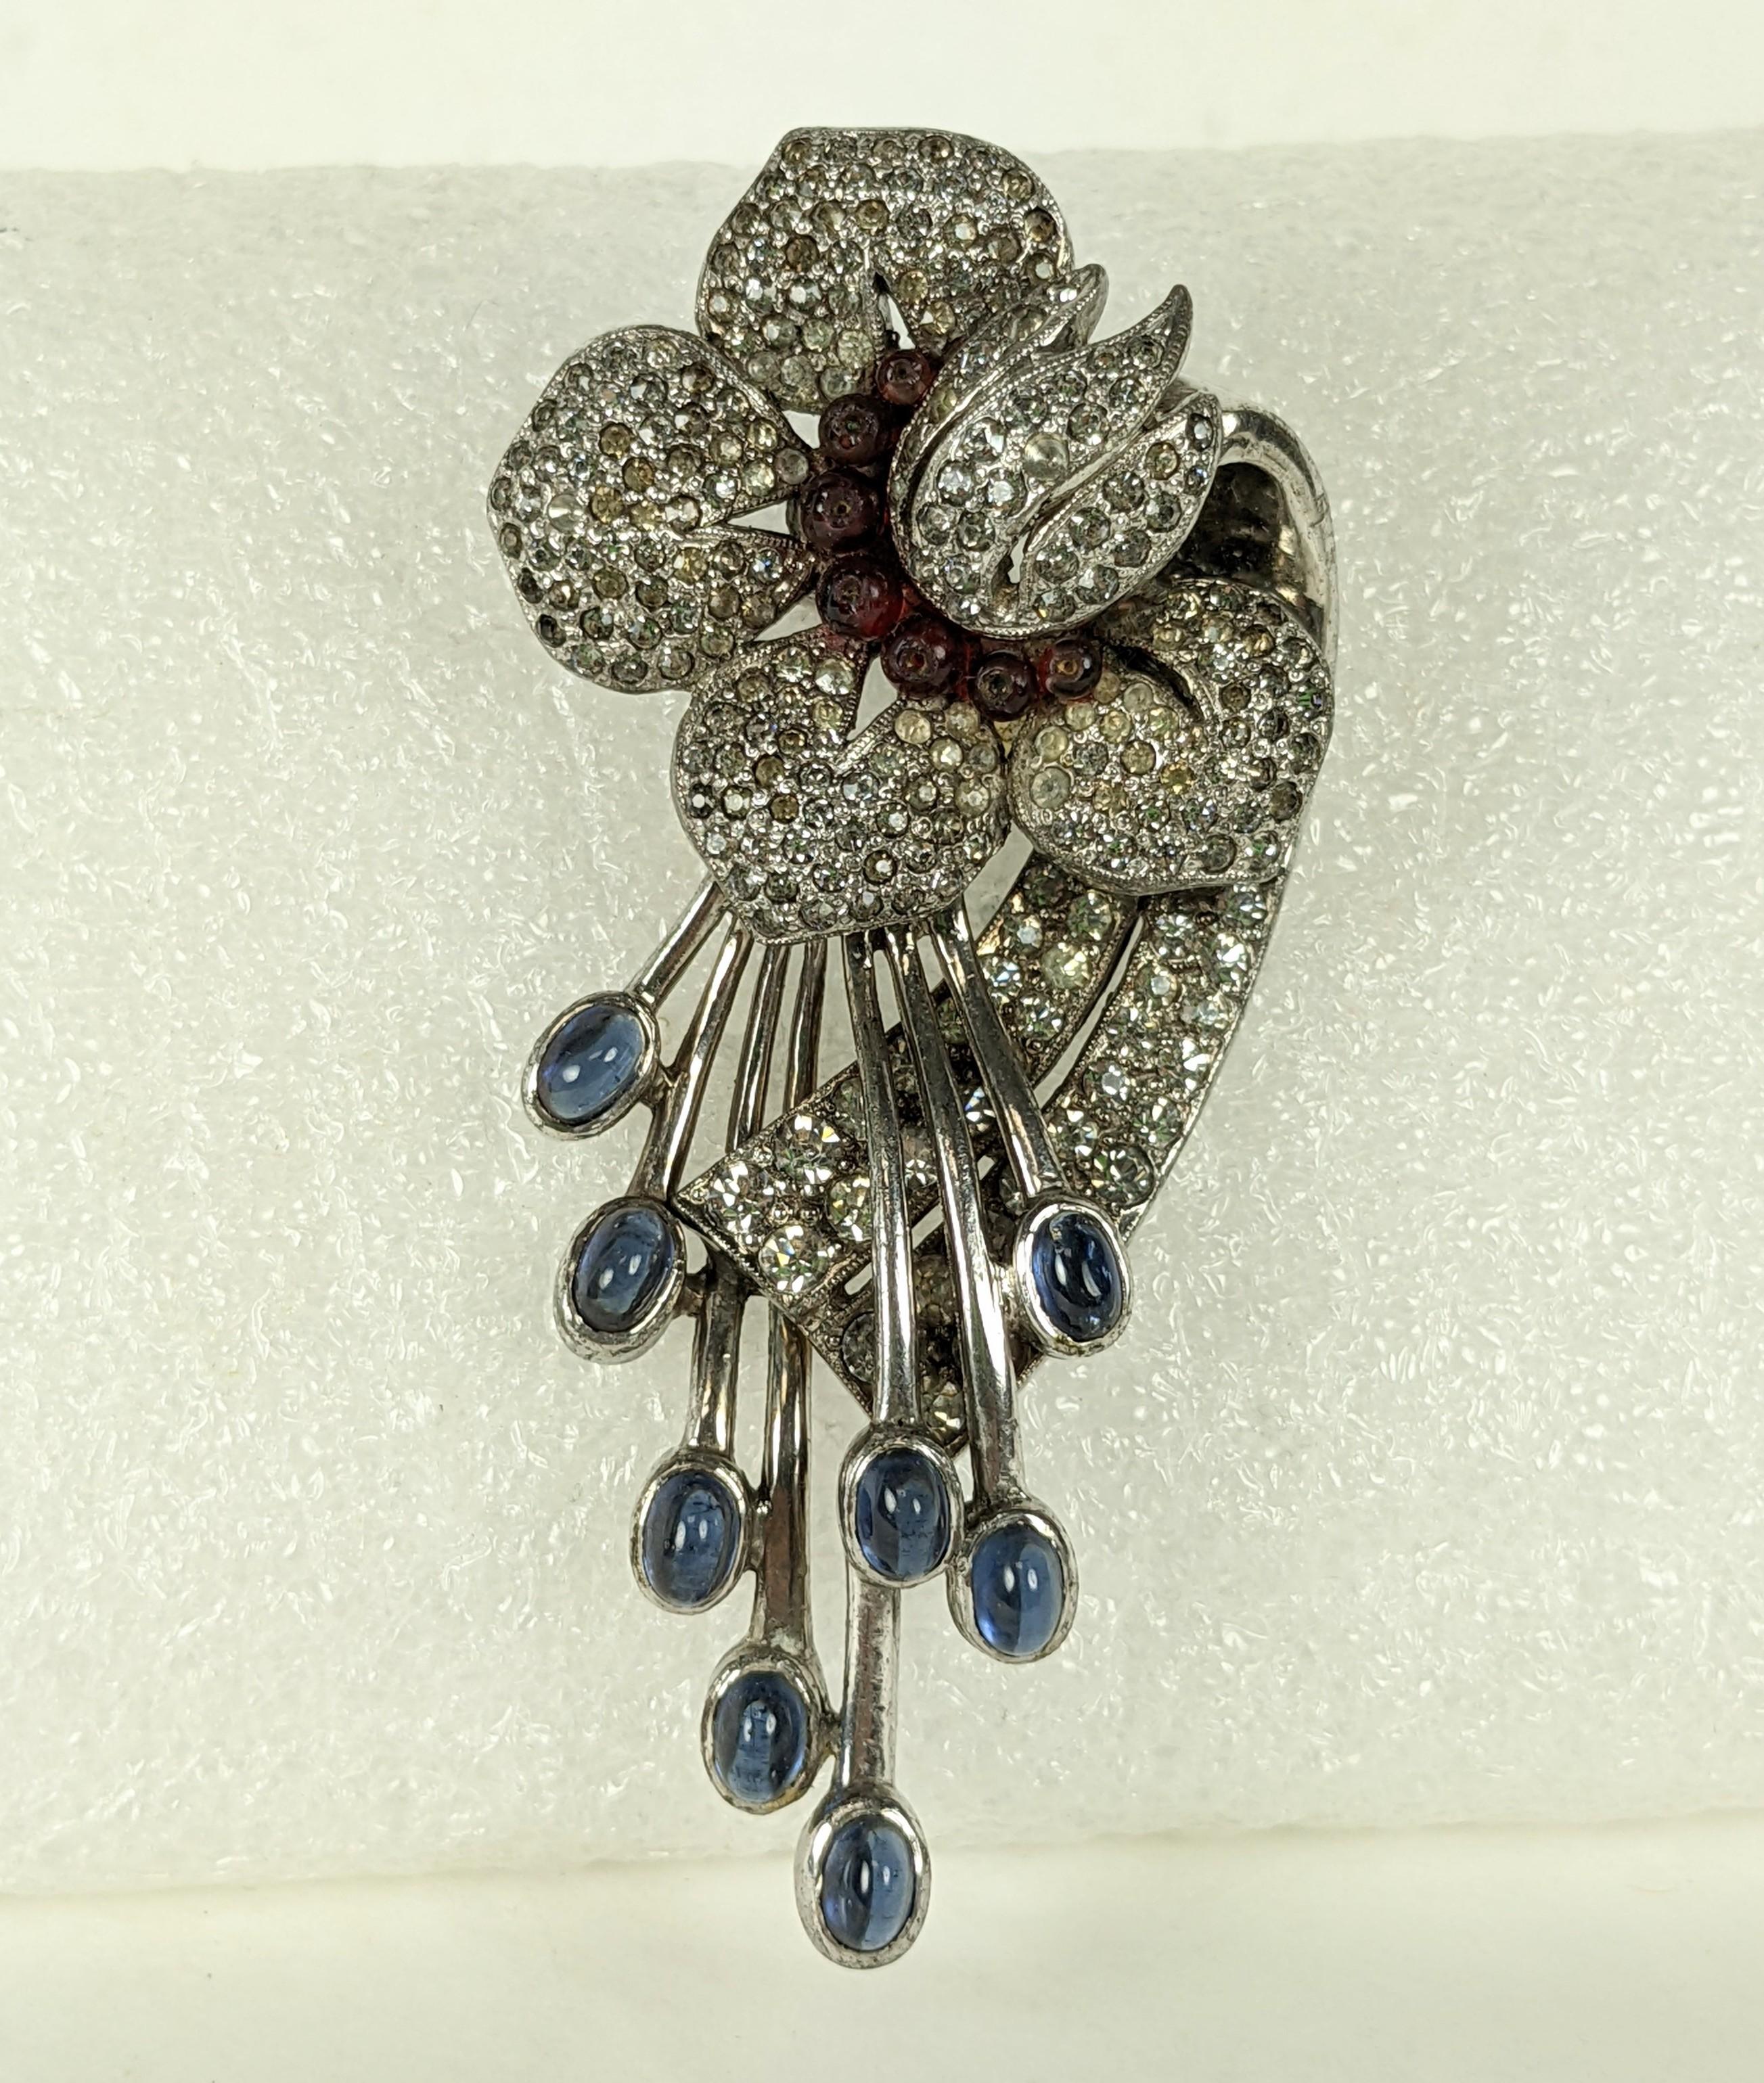 Attraktive Art Deco Pave Lily Brosche von hoher Qualität aus den 1930er Jahren. Entworfen als eine spuckende Lilie mit Kabinen von unechten Saphiren aus Rubin Perle Mitte. Feine Pavee-Arbeiten im gesamten Blütenkopf und in der Glocke.
1930er Jahre,